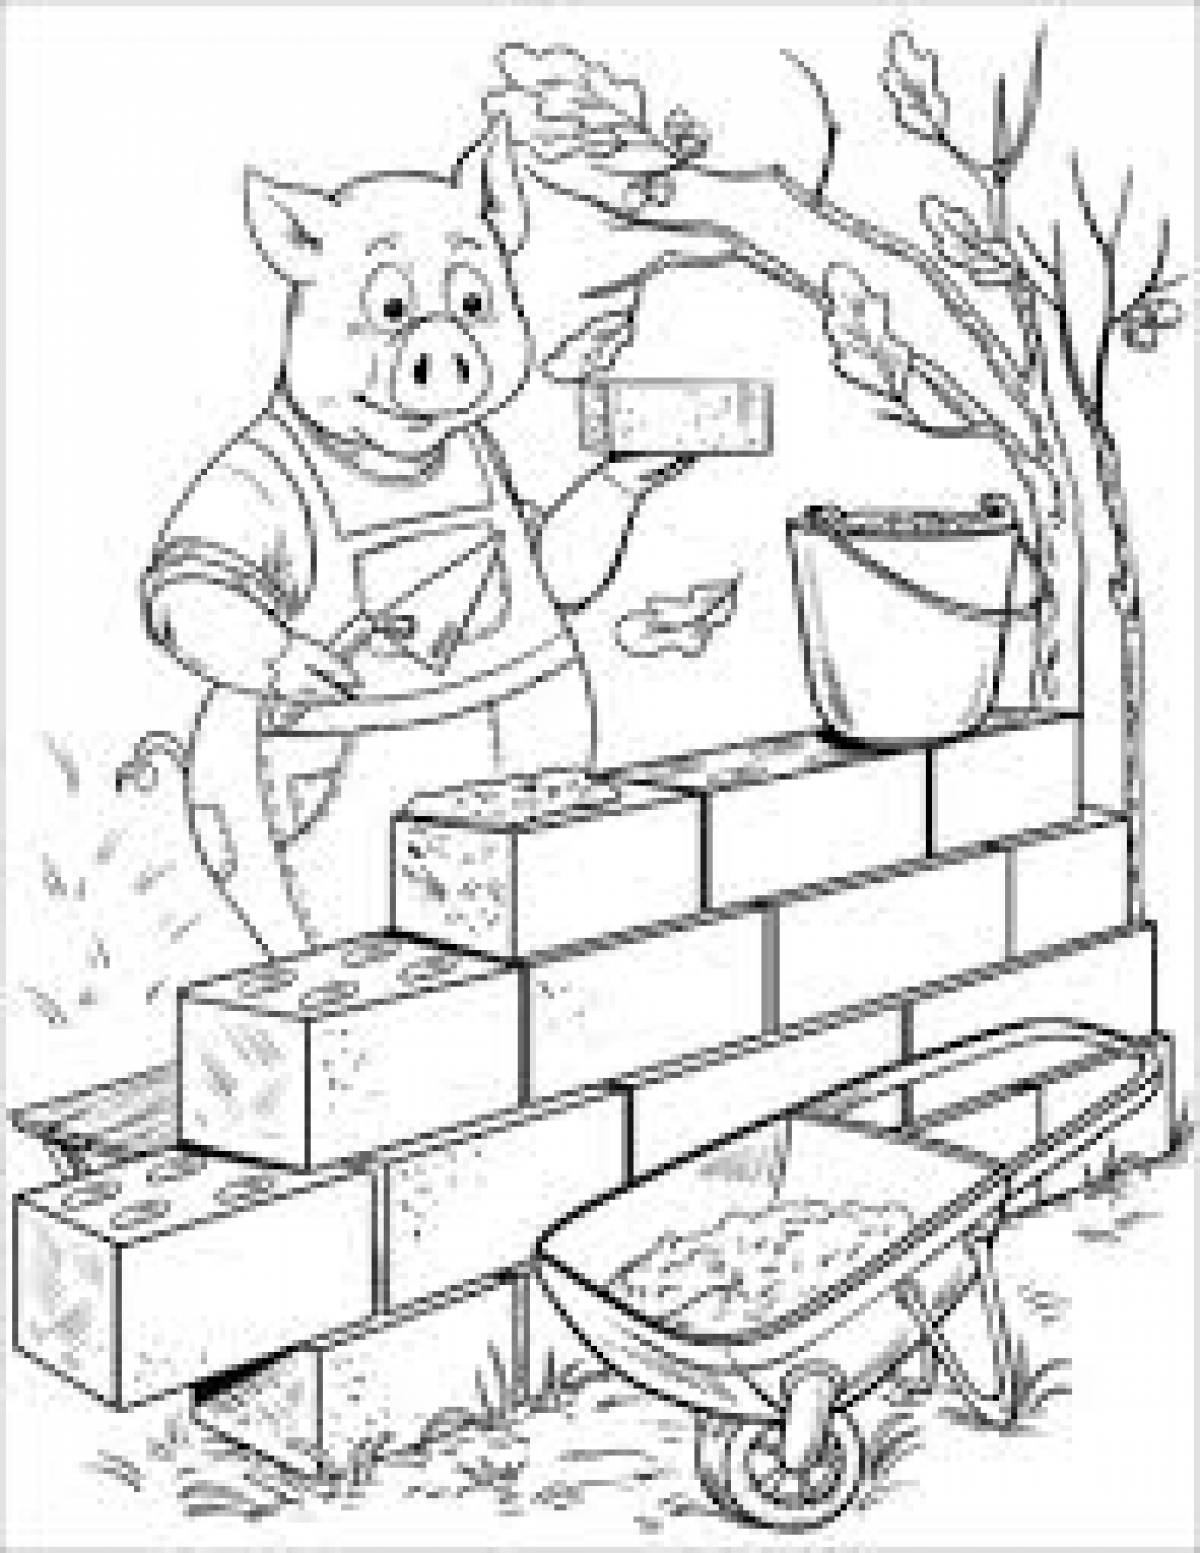 Piglet lays bricks